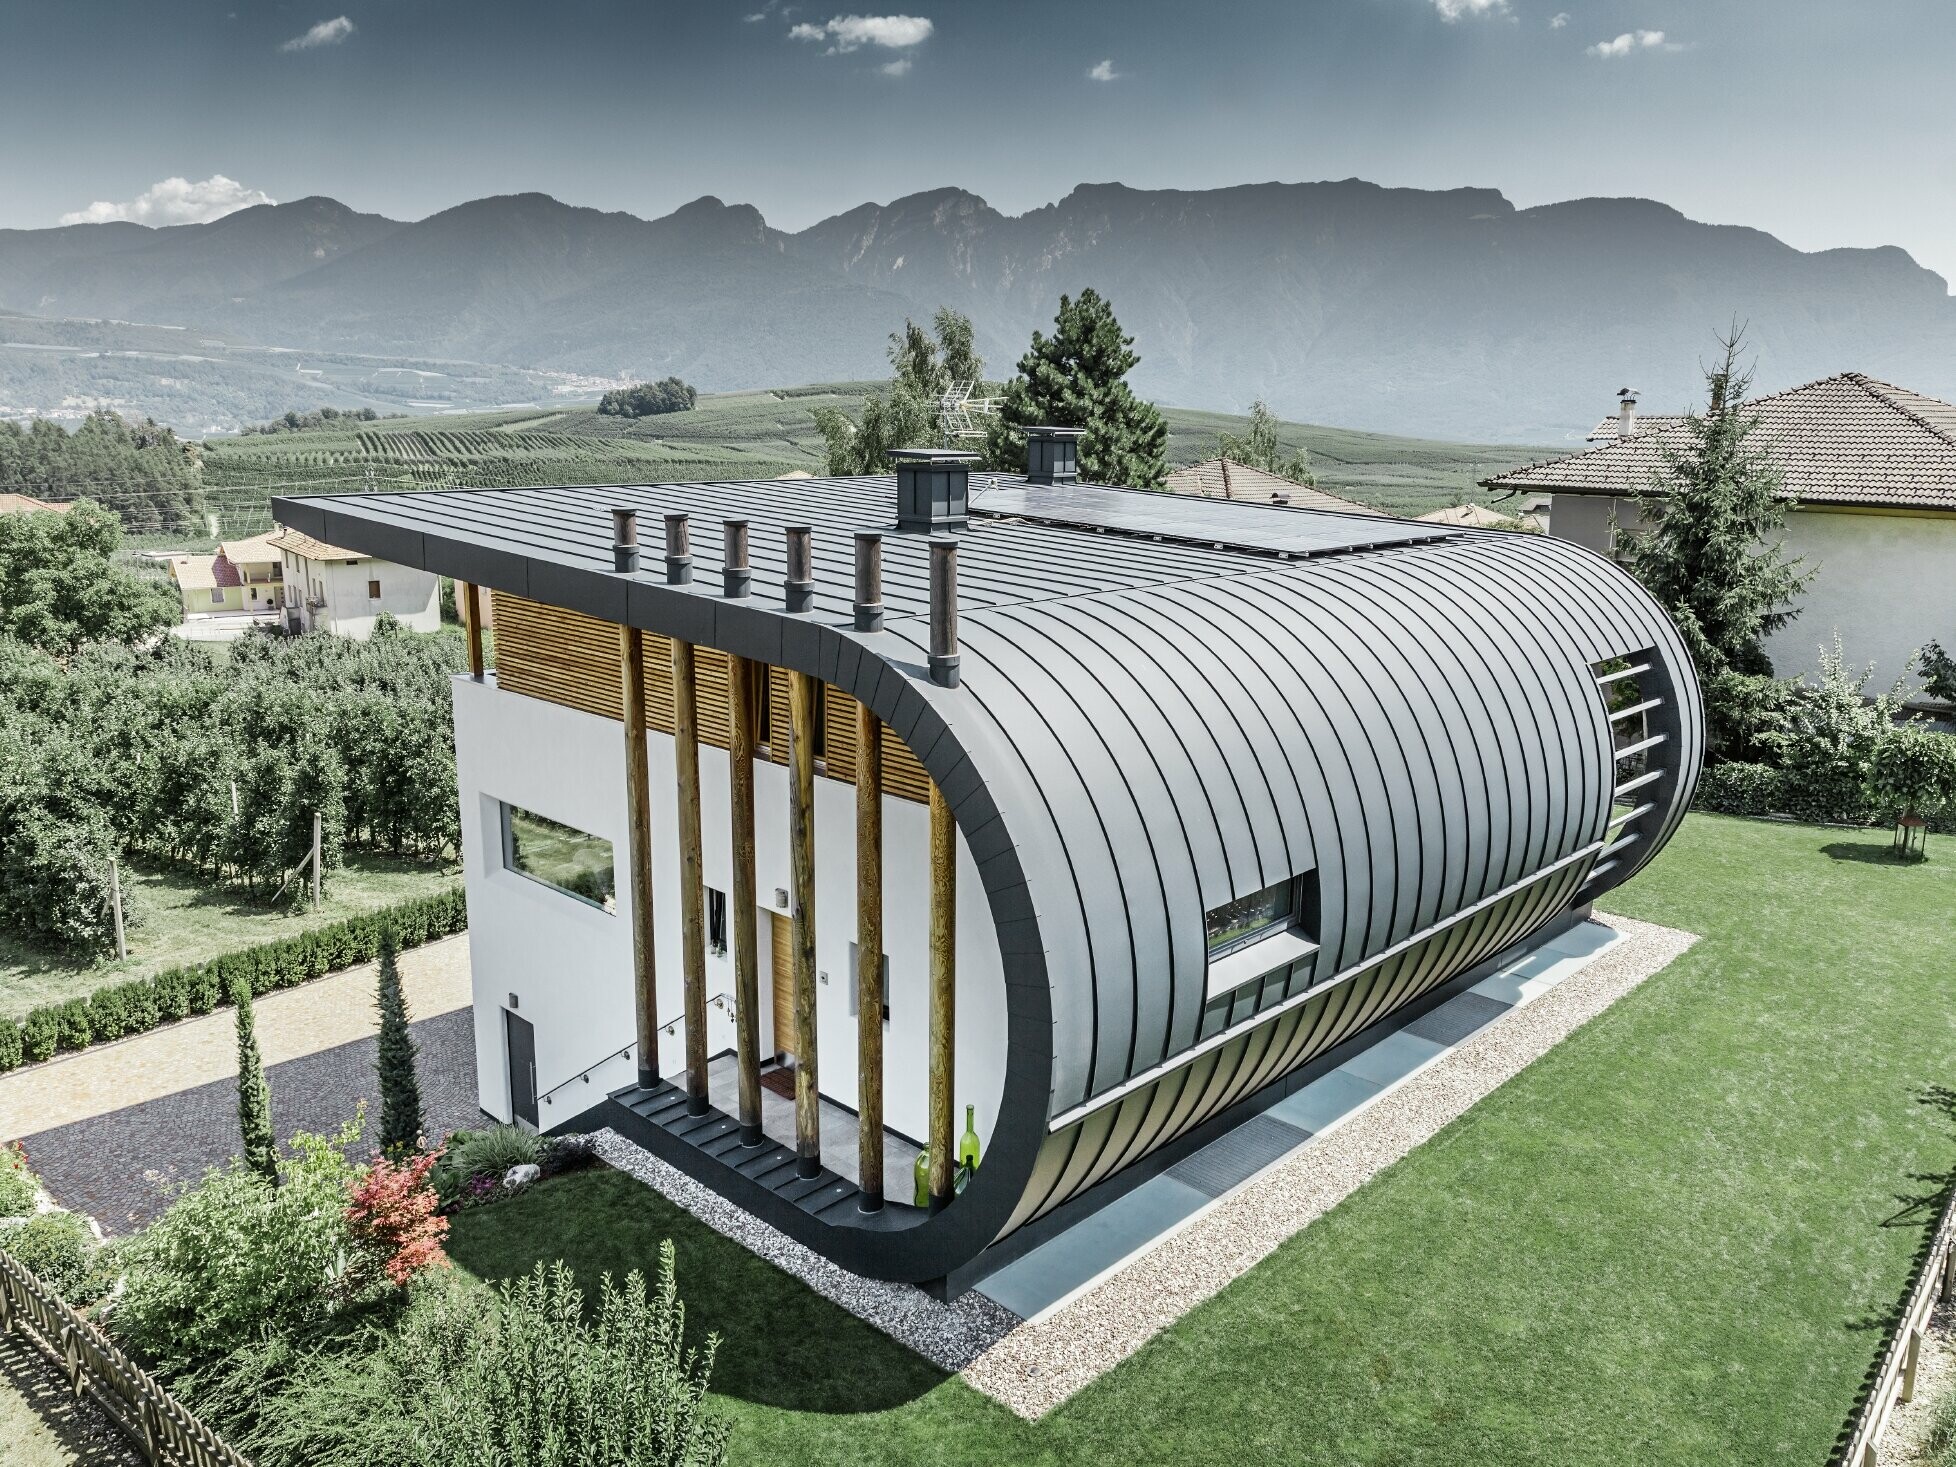 Snimka iz zraka kuće Casa Giovannini u Italiji sa zaobljenom fasadom sa sustavom PREFLAZ u P.10 antracit boji.